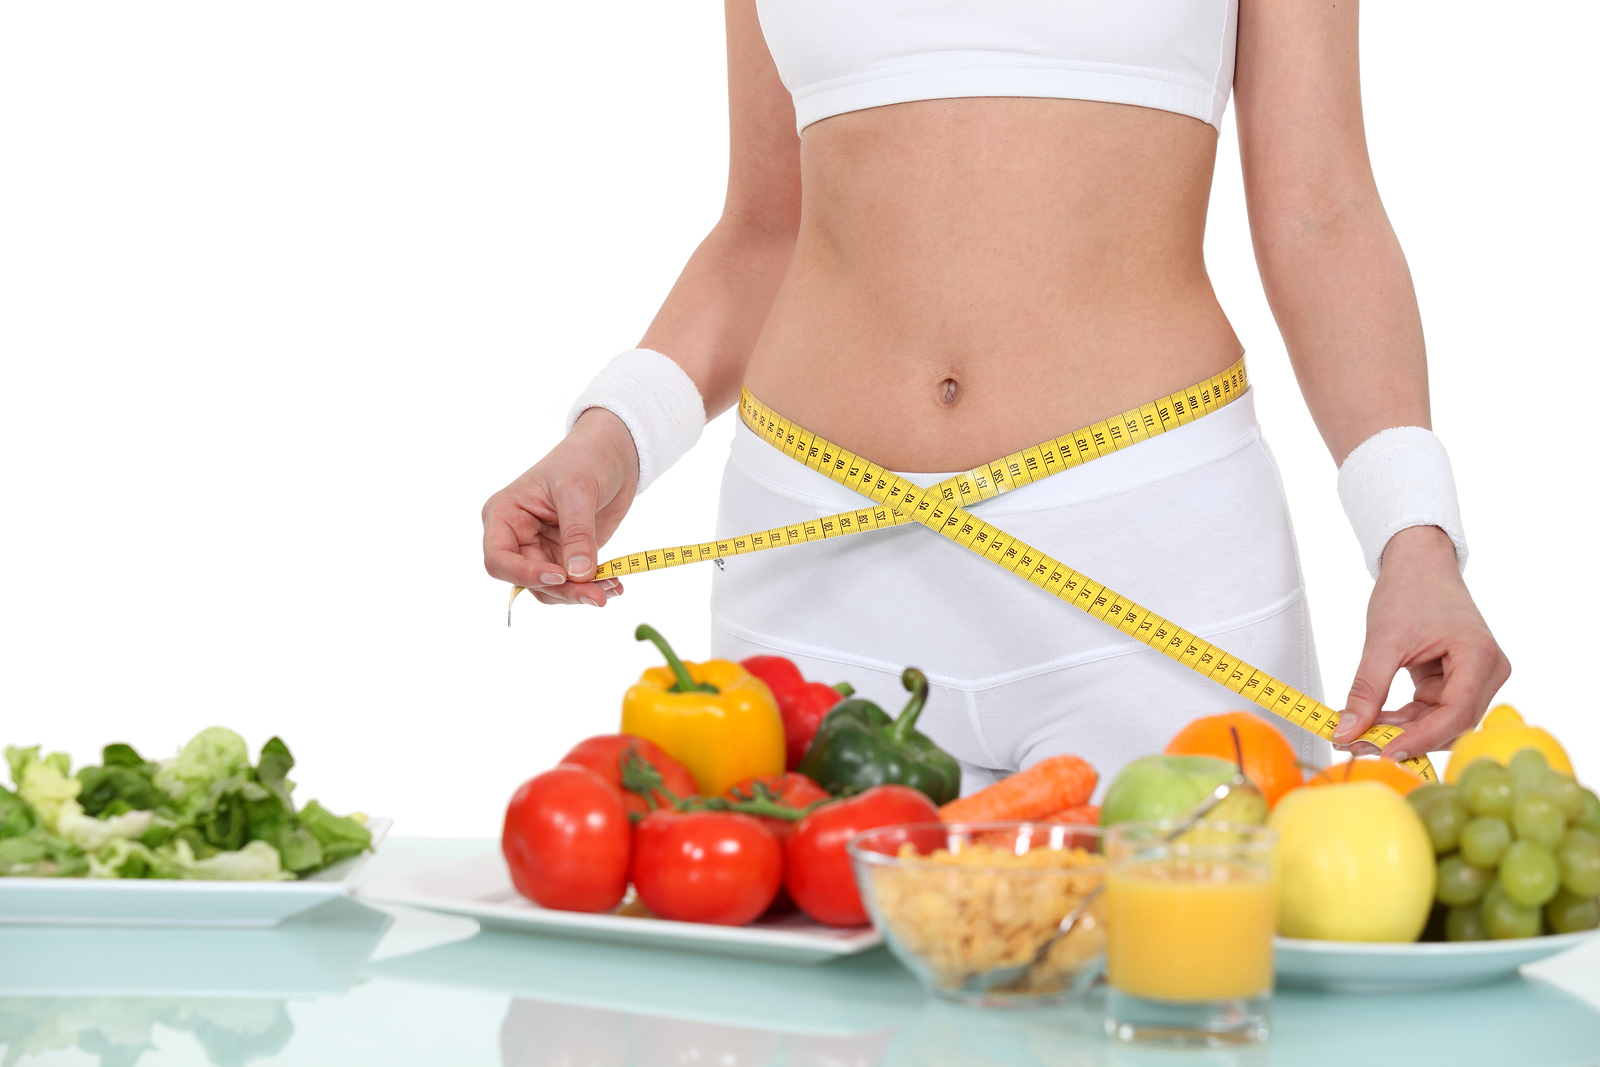 Tập gym buổi sáng nên ăn gì để hỗ trợ quá trình tăng cơ giảm mỡ?